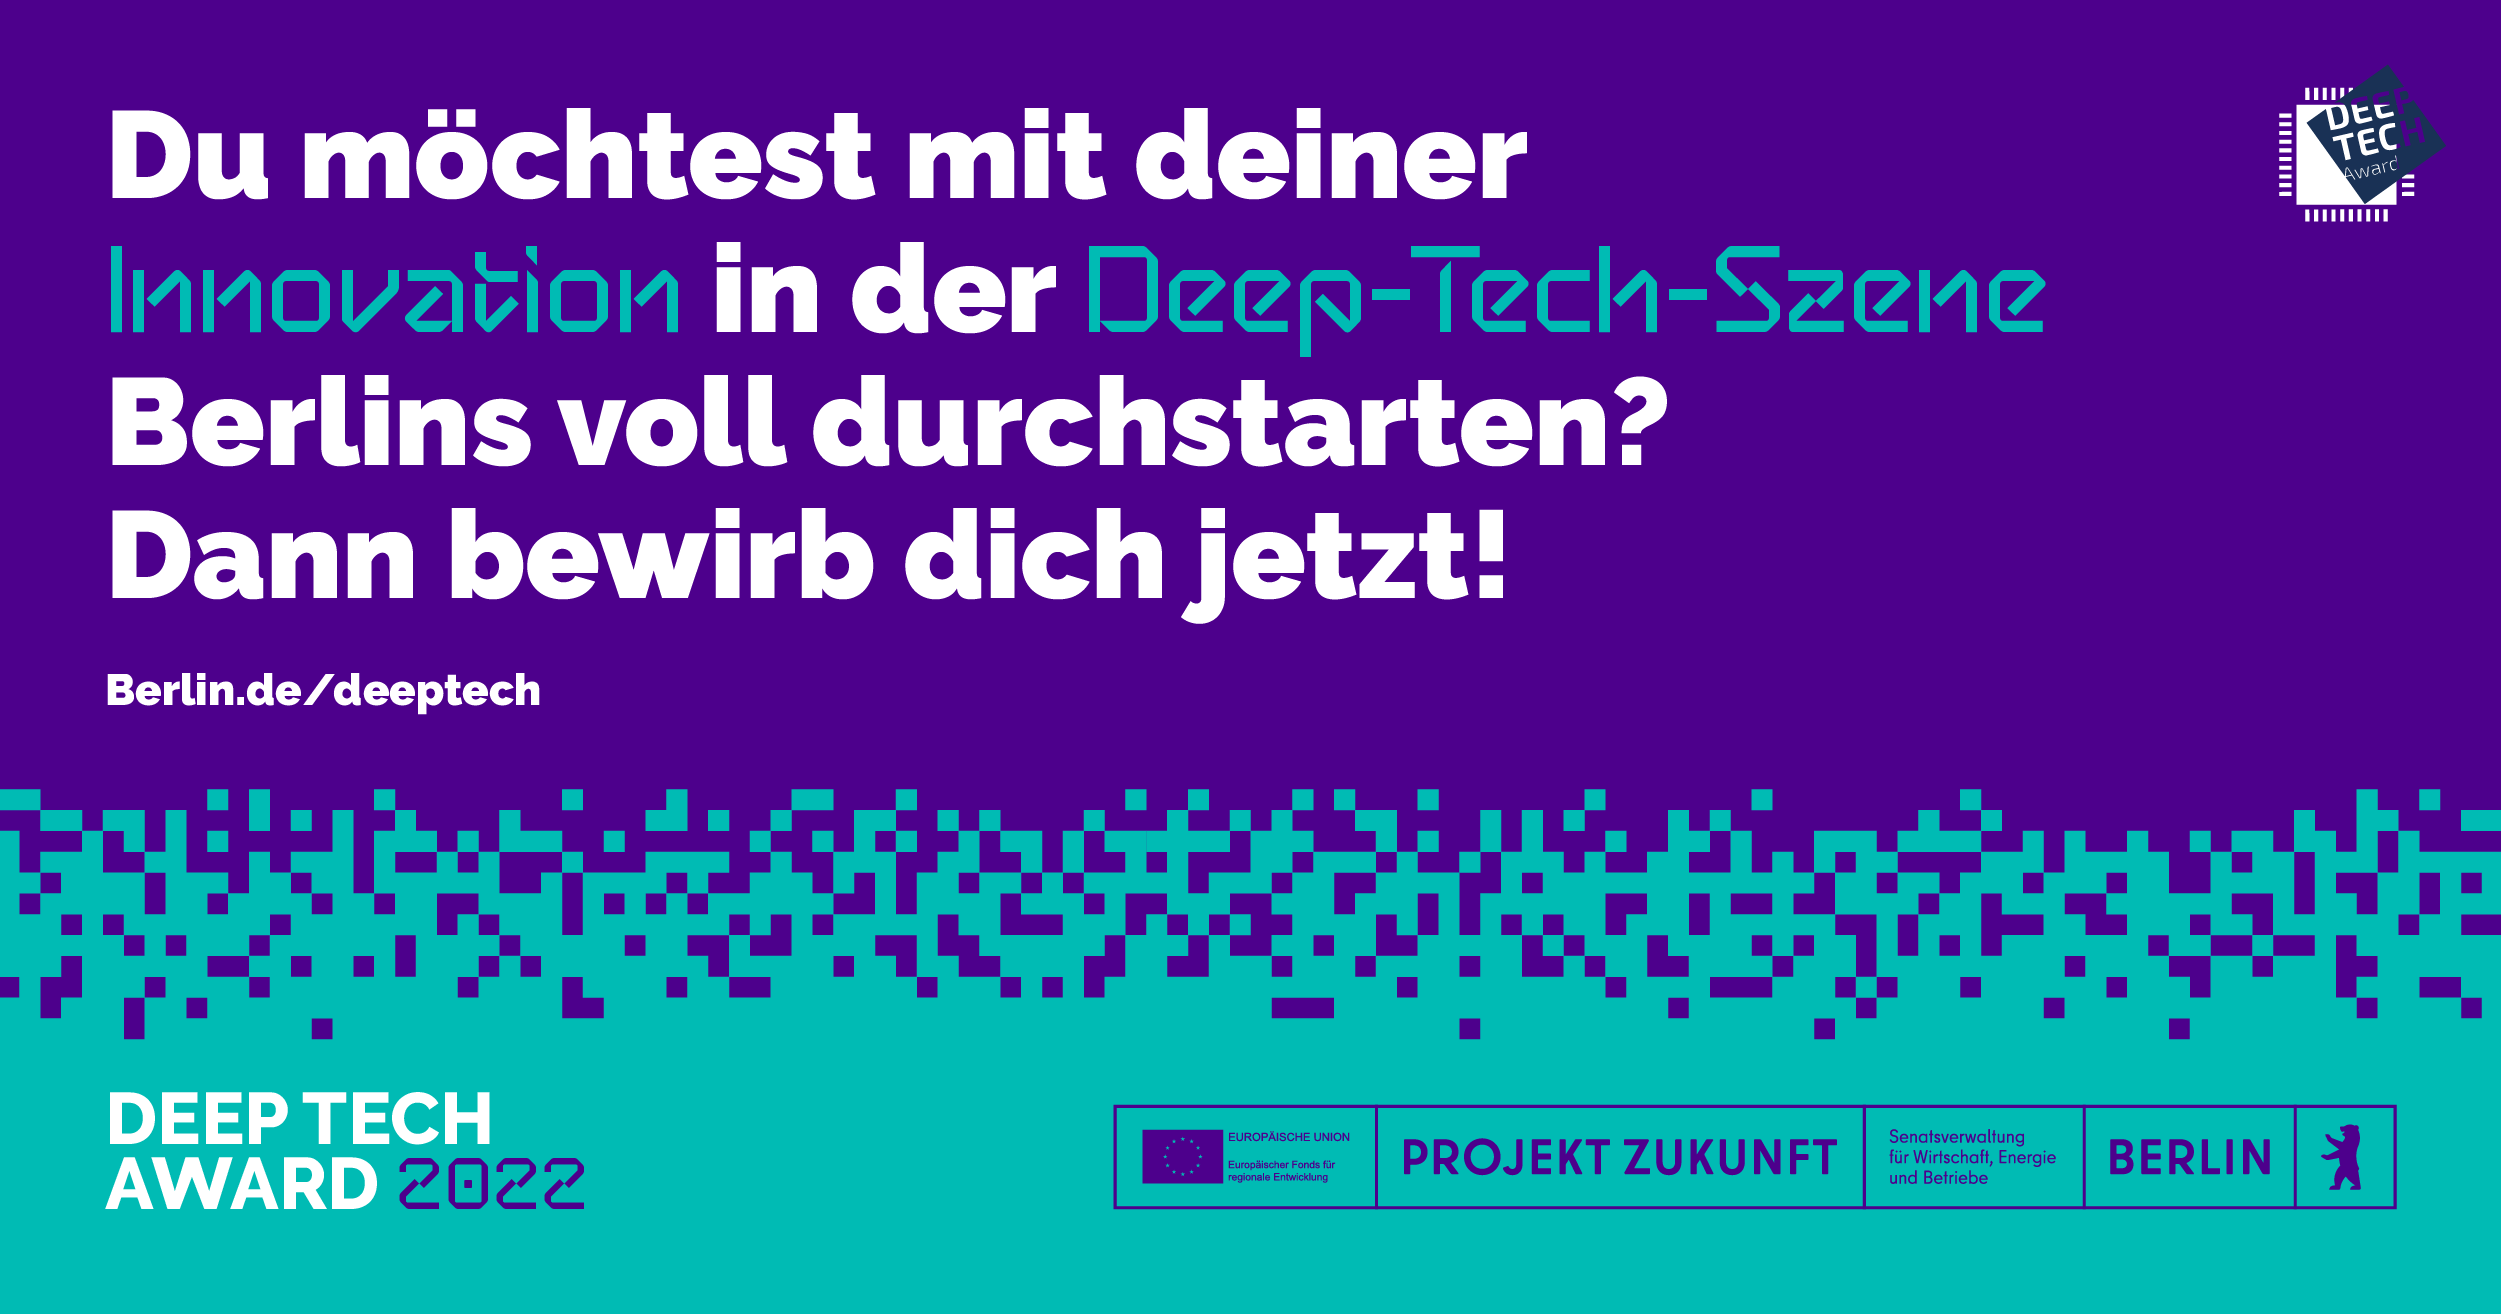 Deep Tech Award Berlin